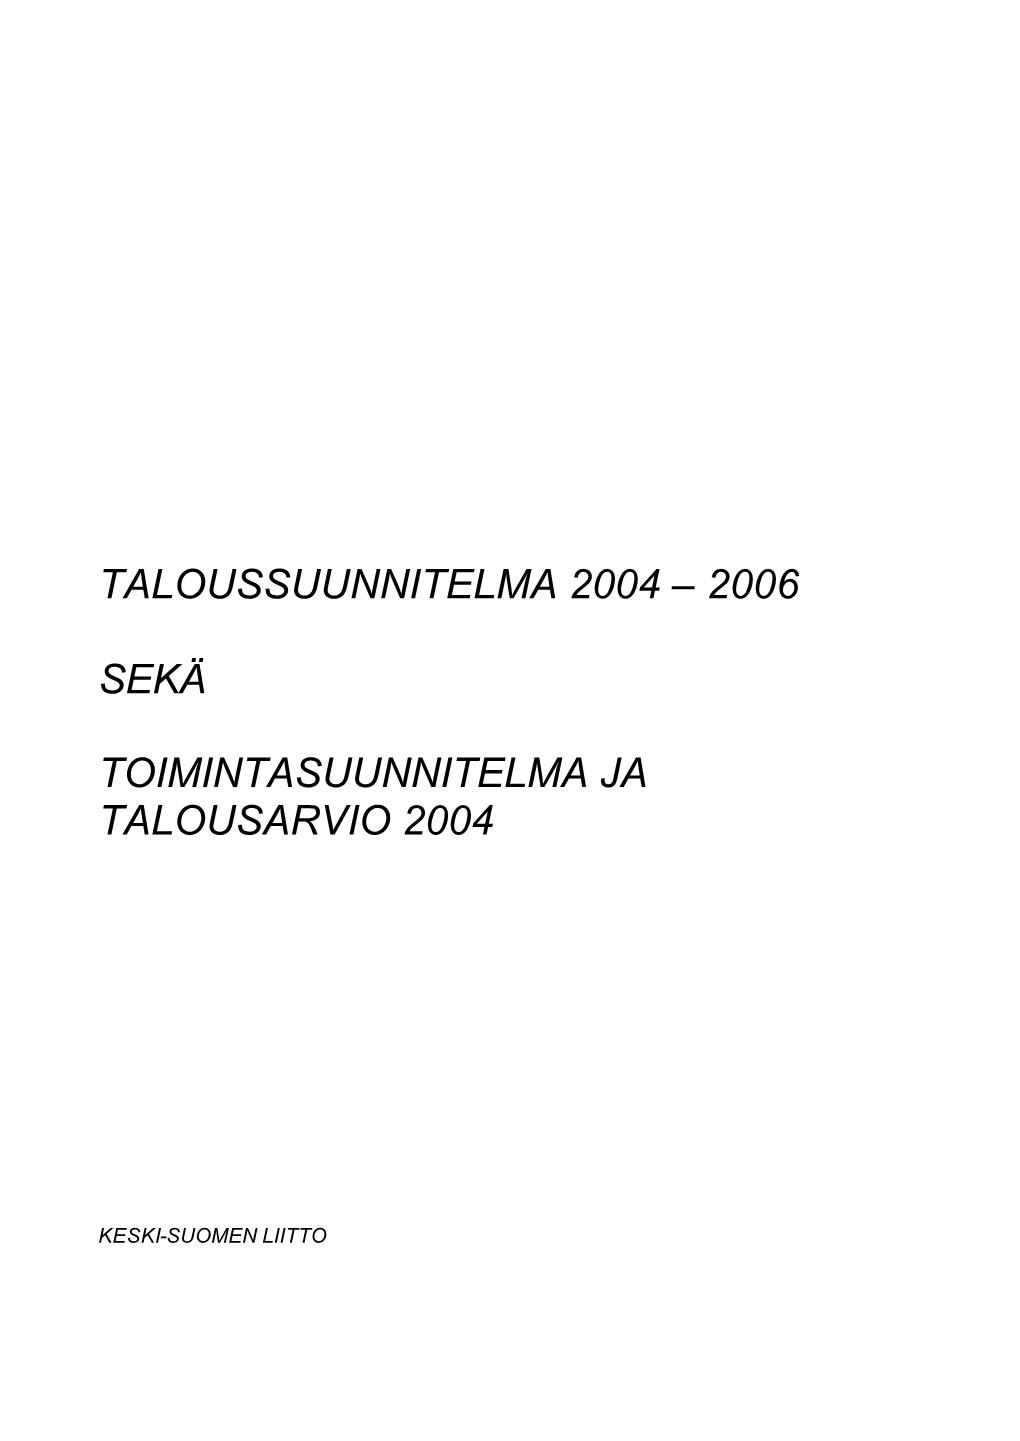 Tas2004-2006, Valtuuston 12.11.2003 Hyväksymä